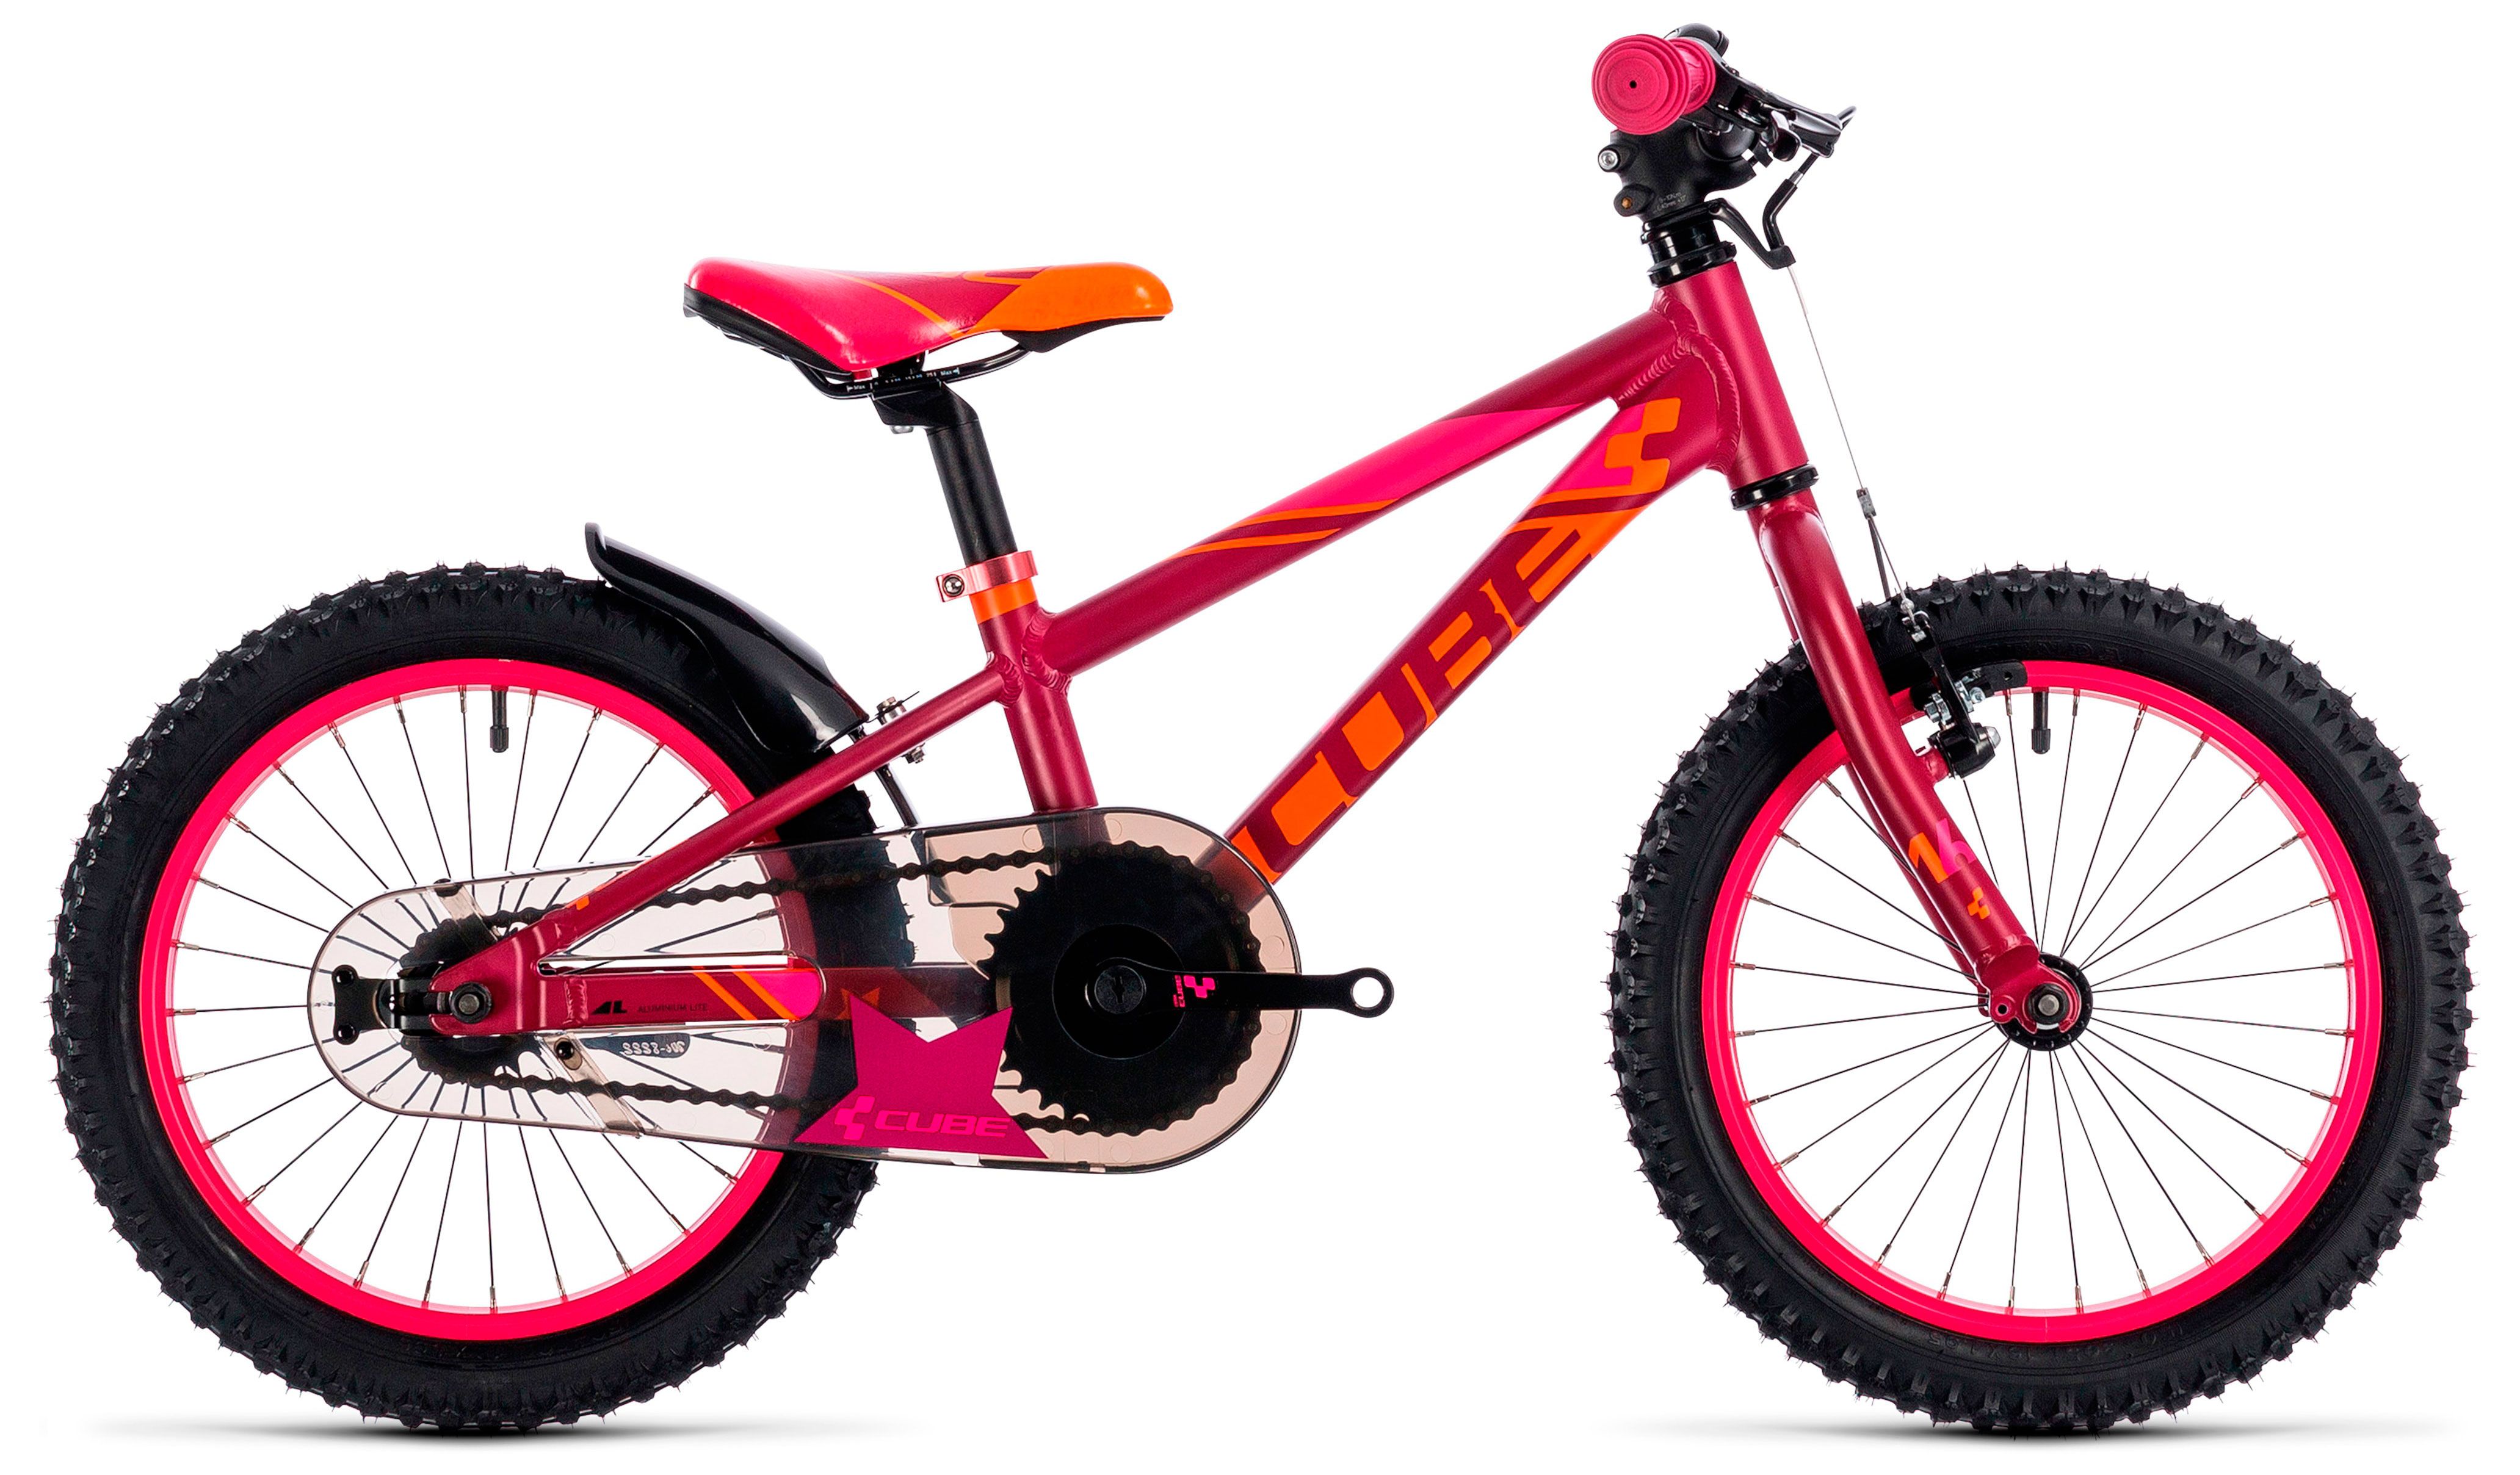  Отзывы о Детском велосипеде Cube KID 160 Girl 2018